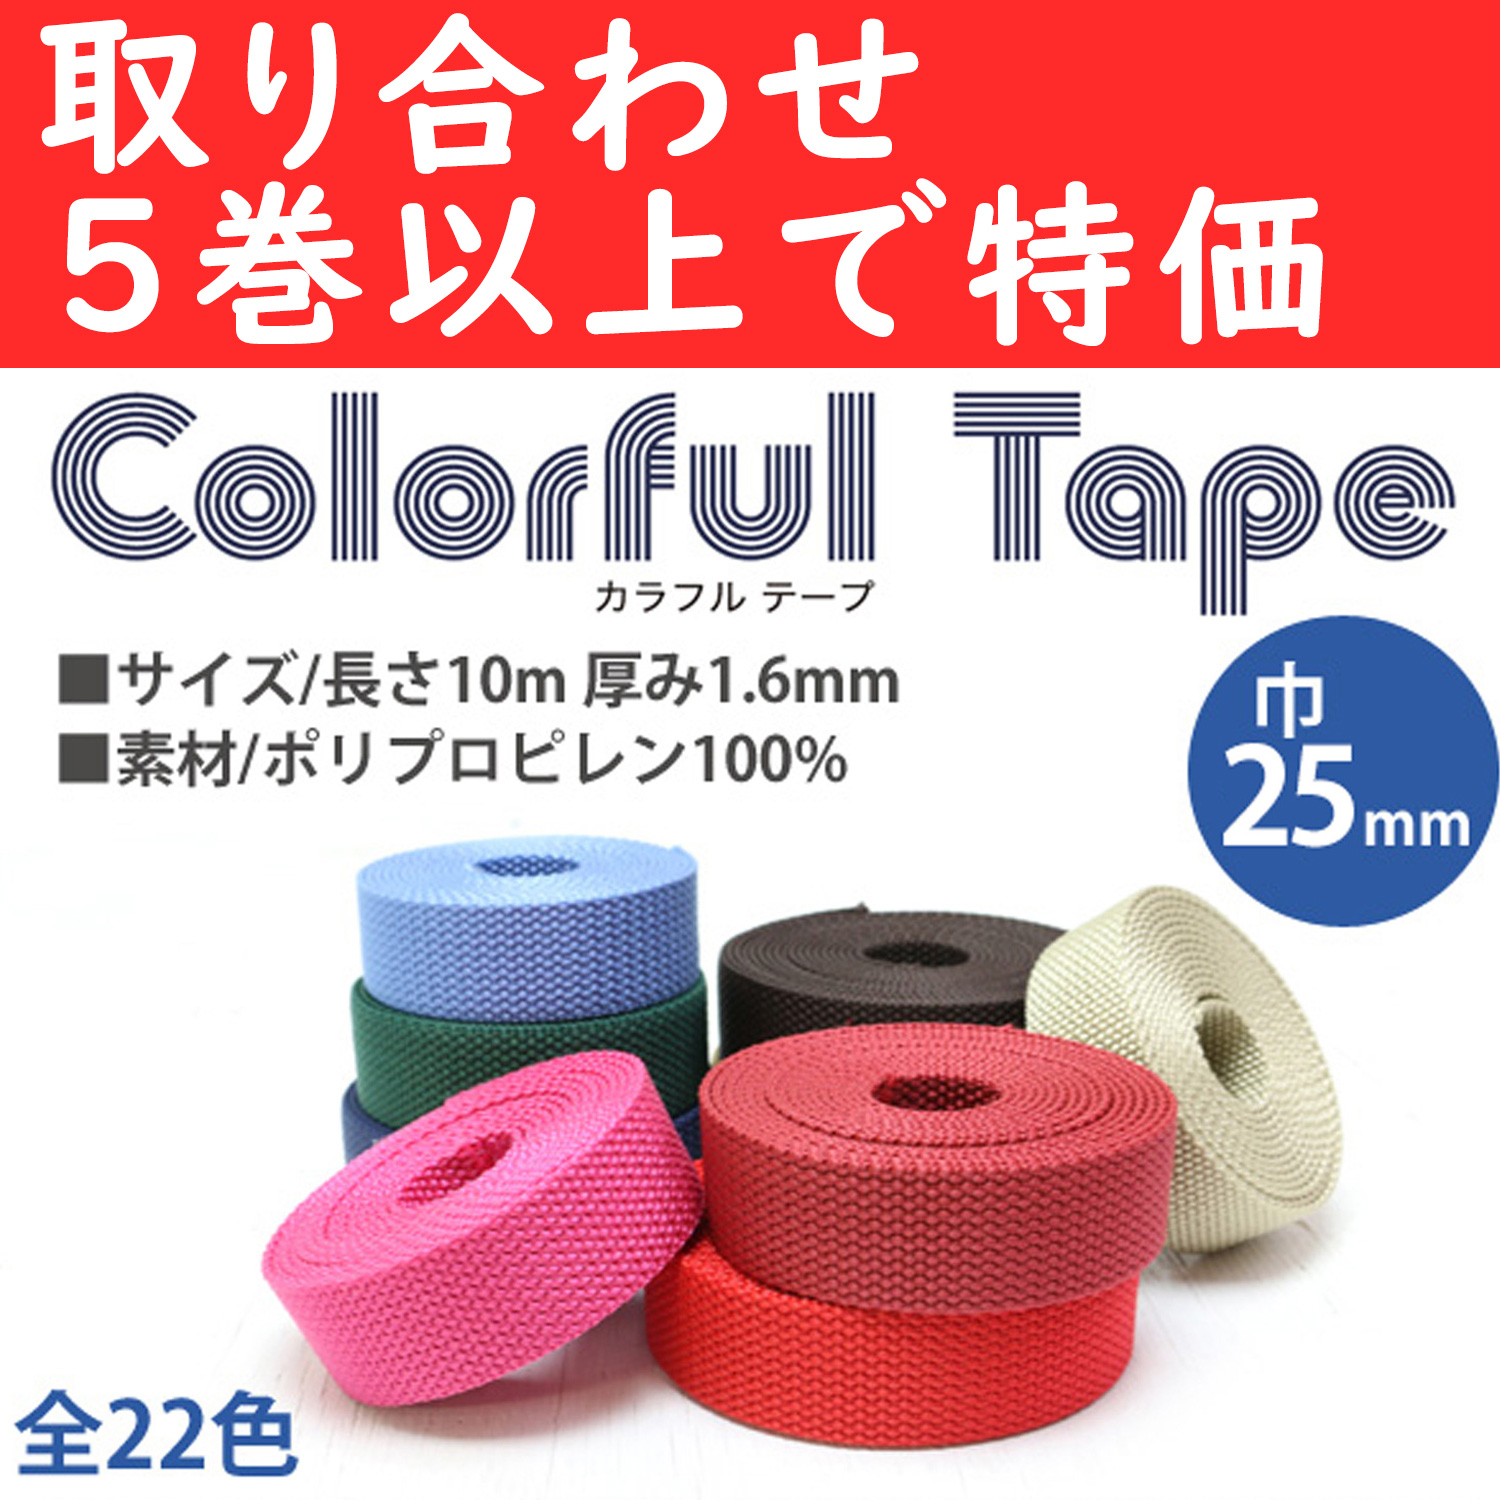 【第二弾】MHP2510-OVER5 ポリテープ 巾25mm×10m 色取り合わせ5巻以上 (巻)